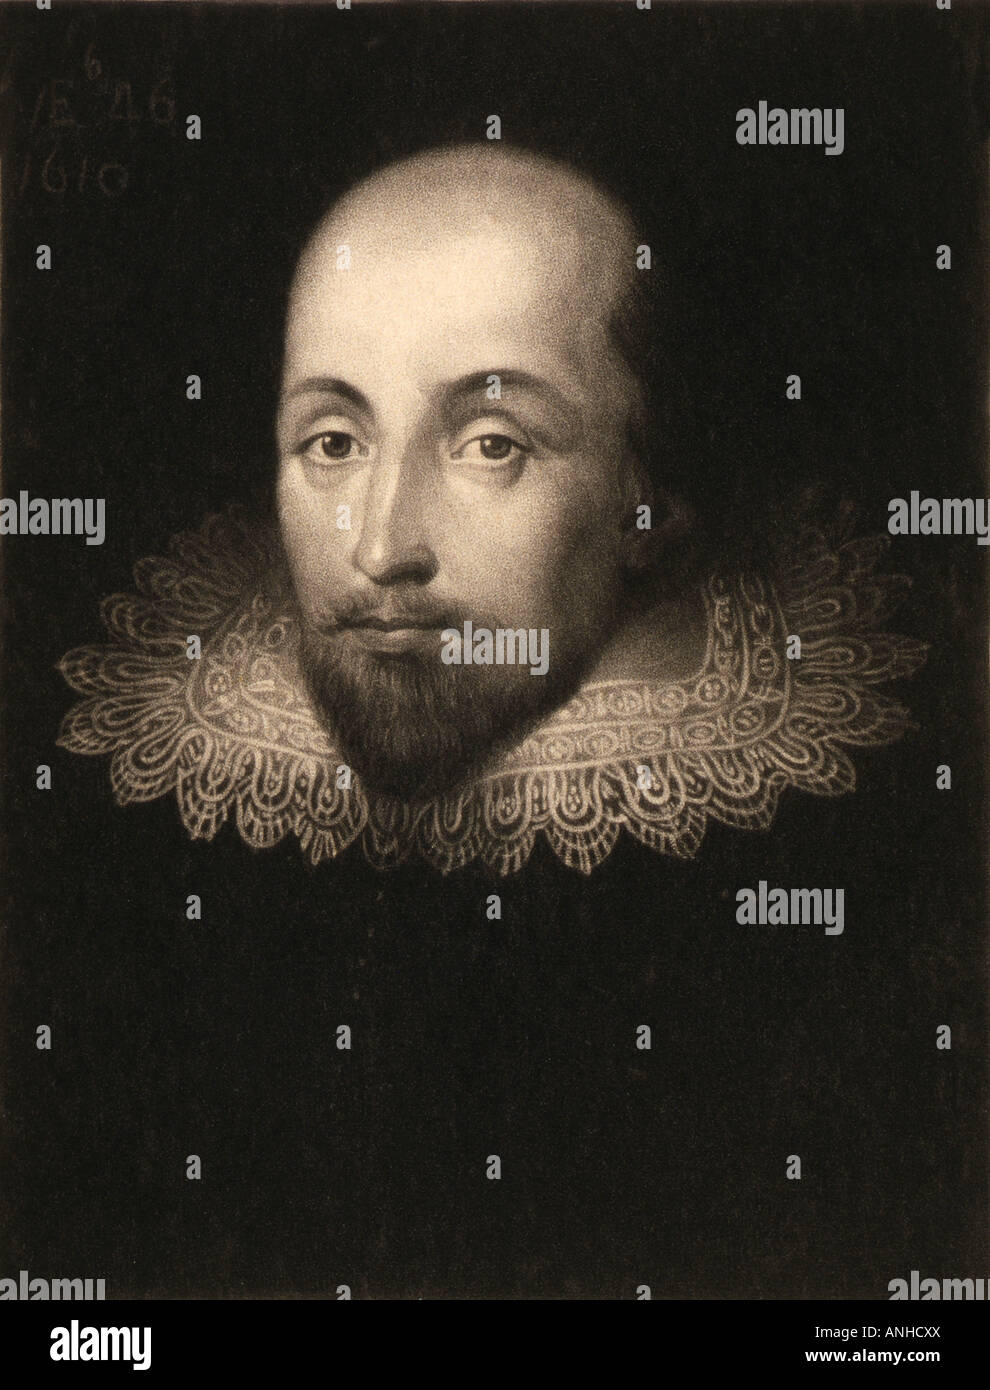 William Shakespeare, 1564 - 1616. Englischer Dichter, Schauspieler und Dramatiker, gestochen von Charles Turner nach einem Porträt von Cornelius Jansen. Stockfoto